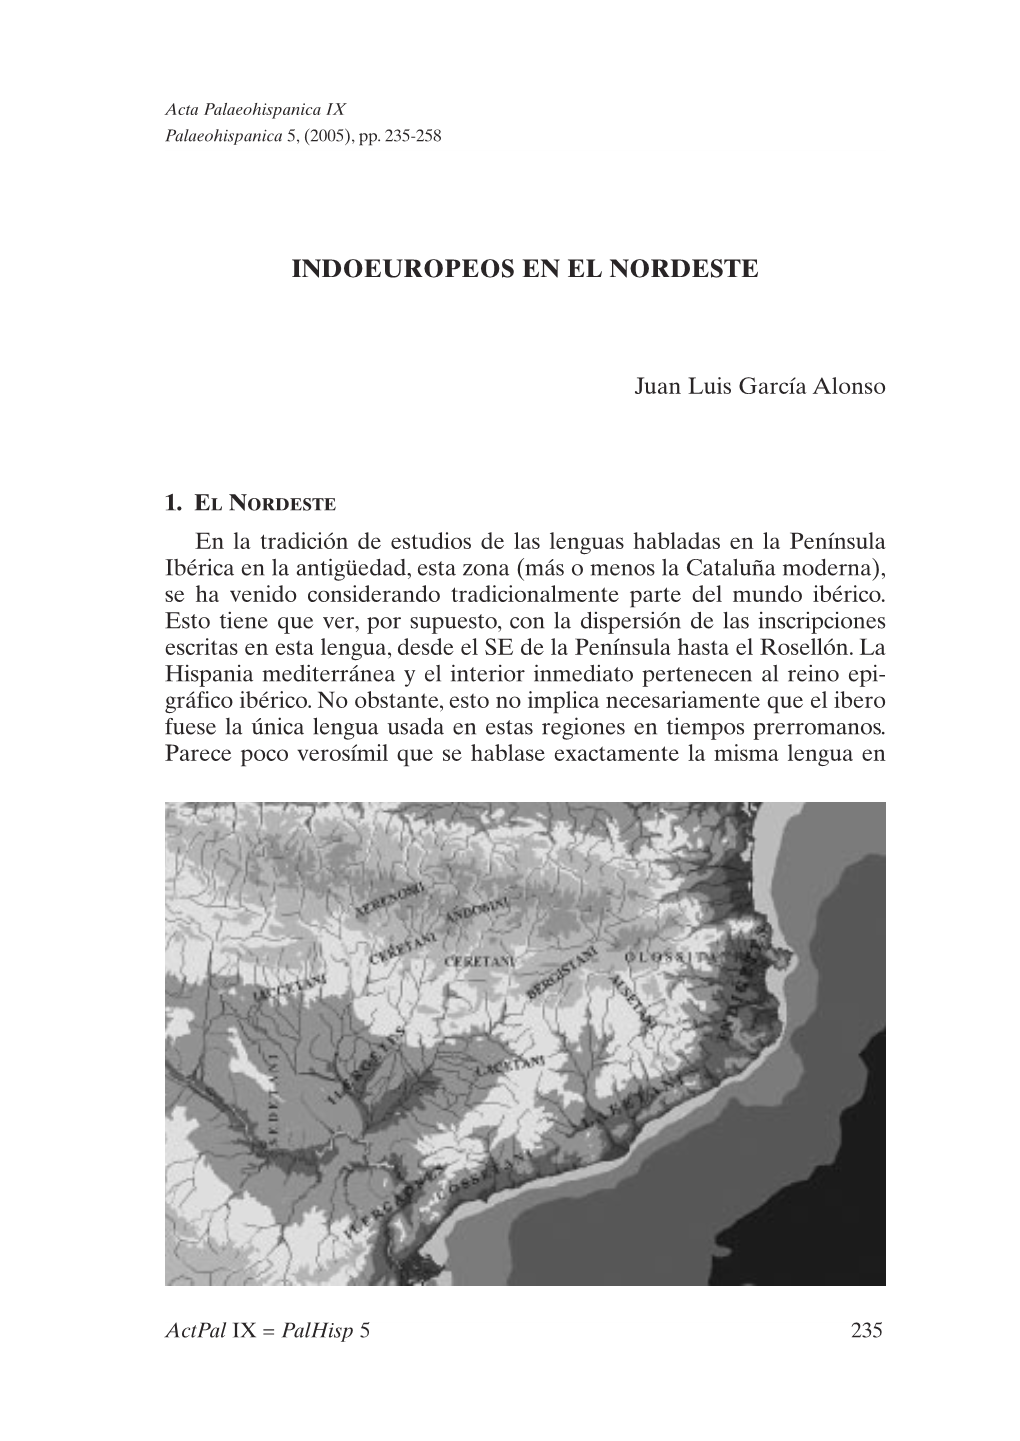 10. Indoeuropeos En El Nordeste, Por Juan Luis García Alonso